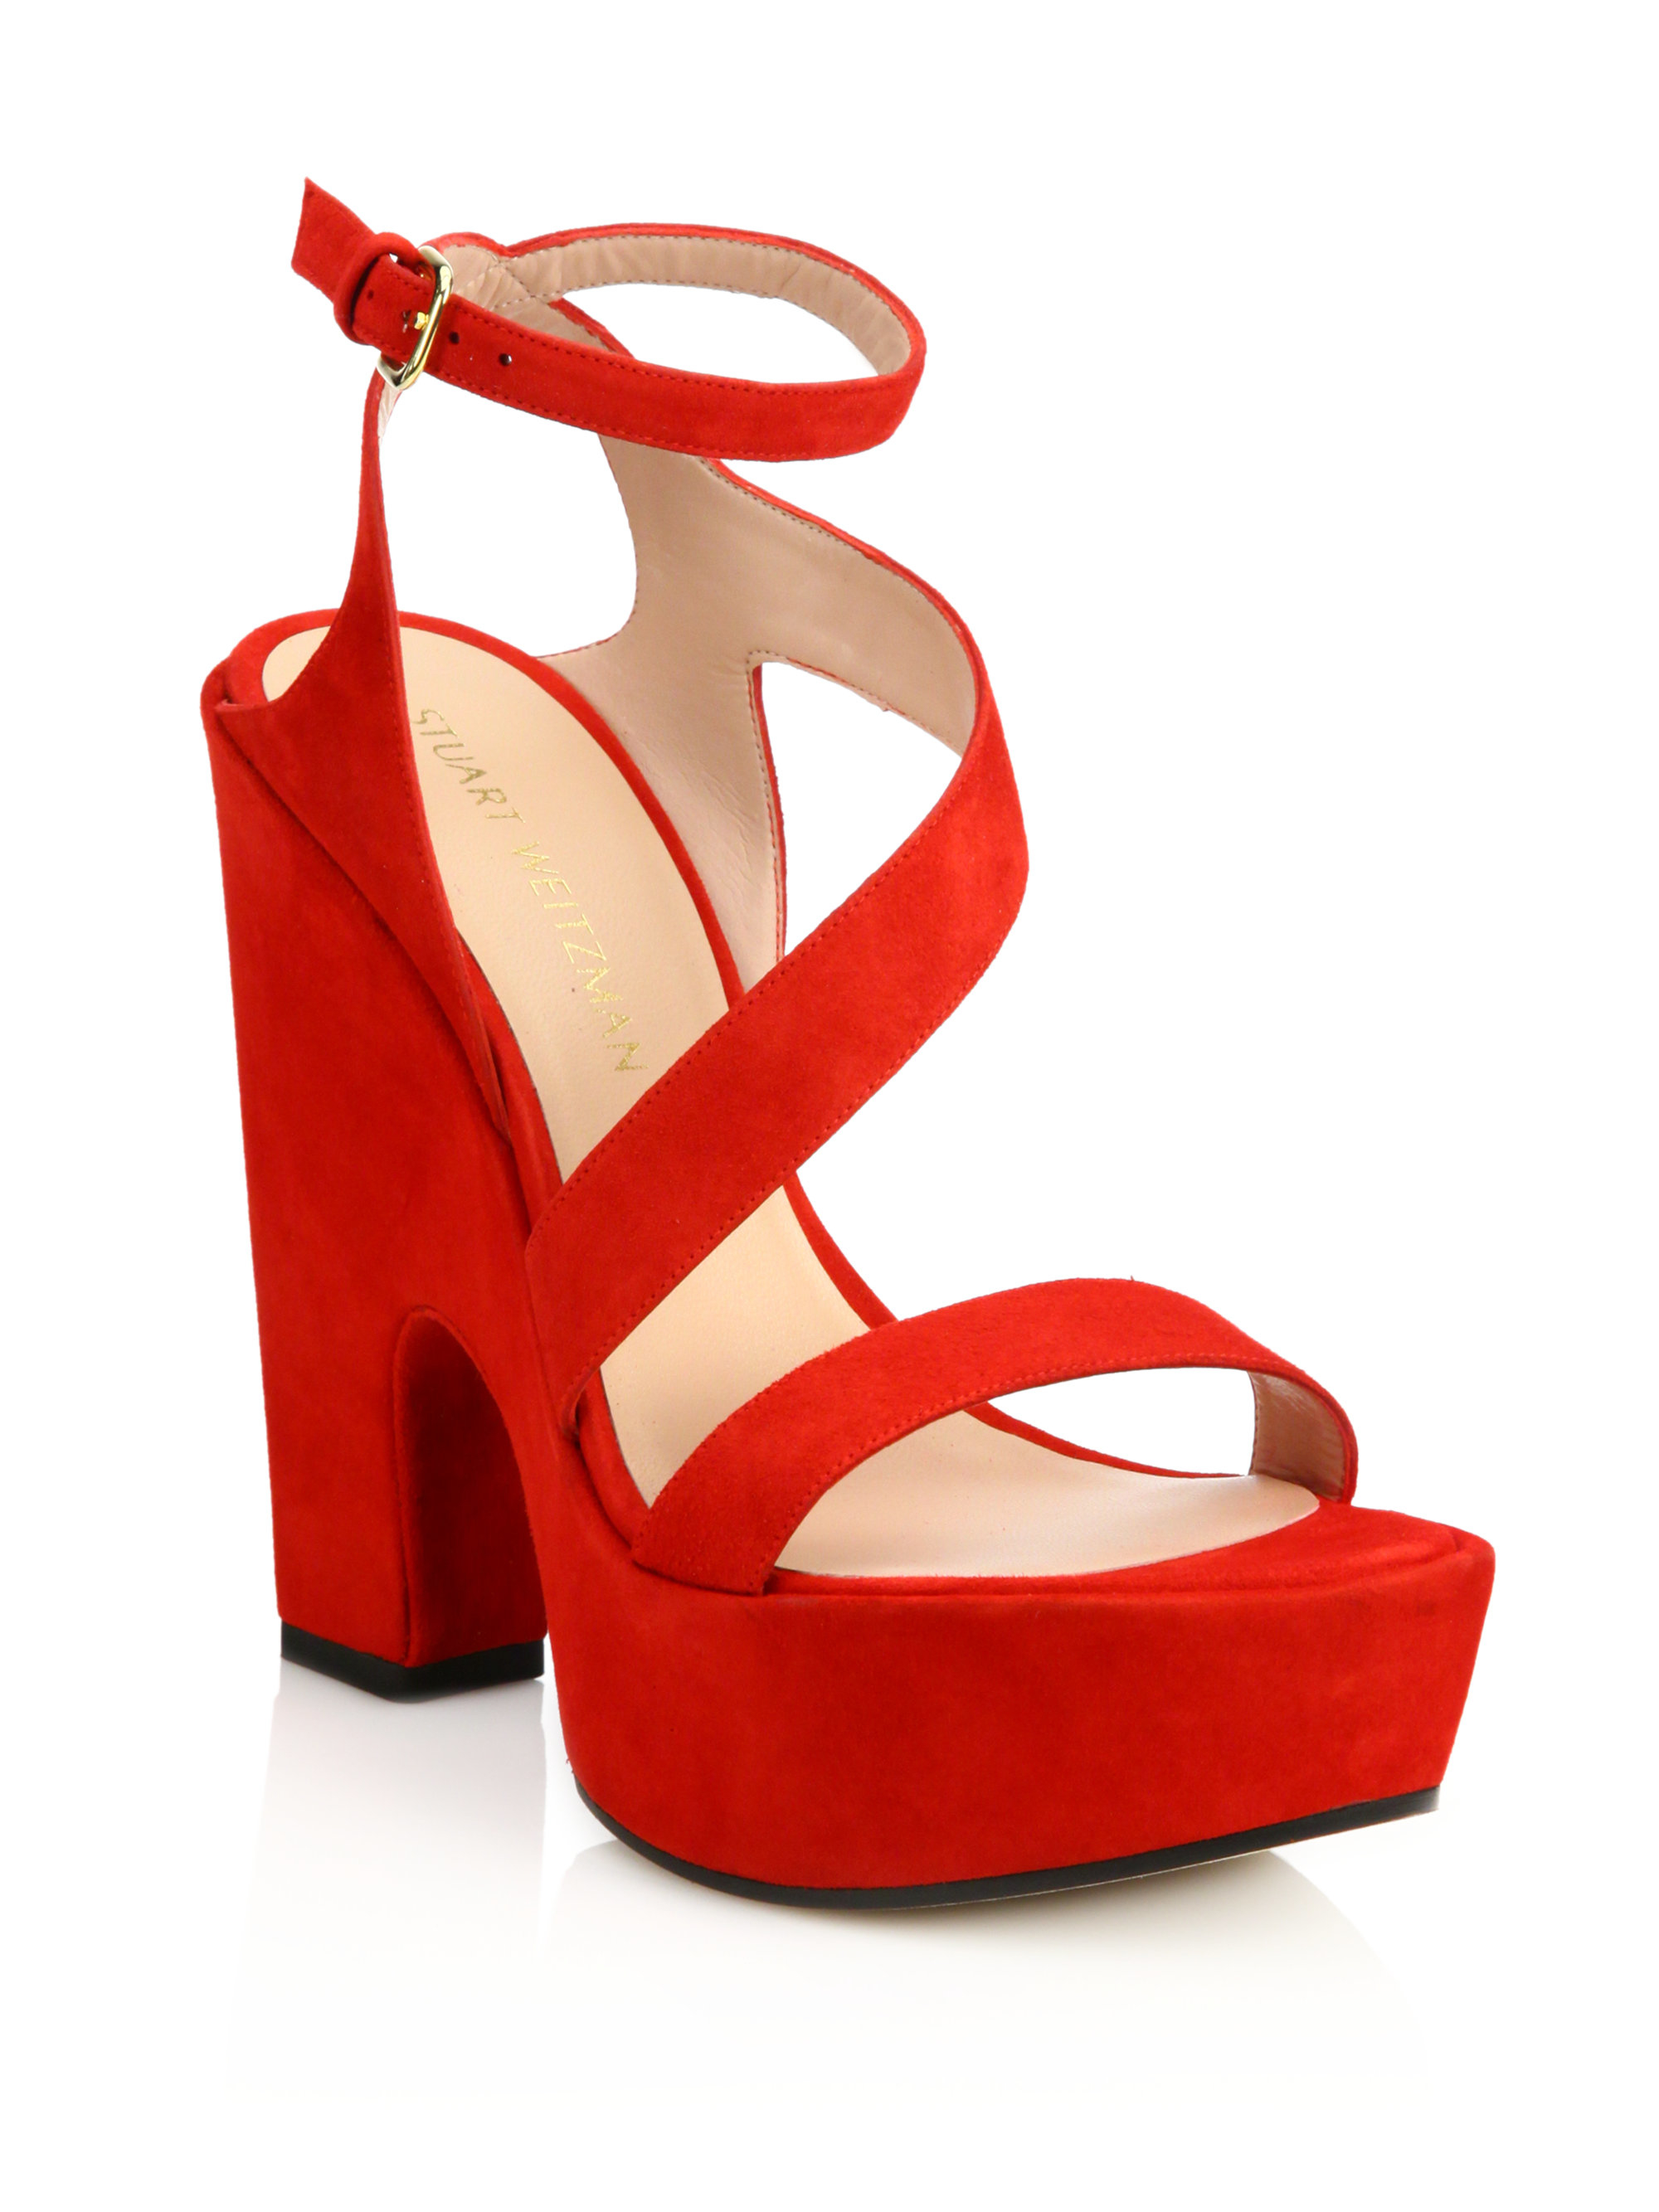 Lyst - Stuart Weitzman Saucy Strappy Suede Platform Sandals in Red